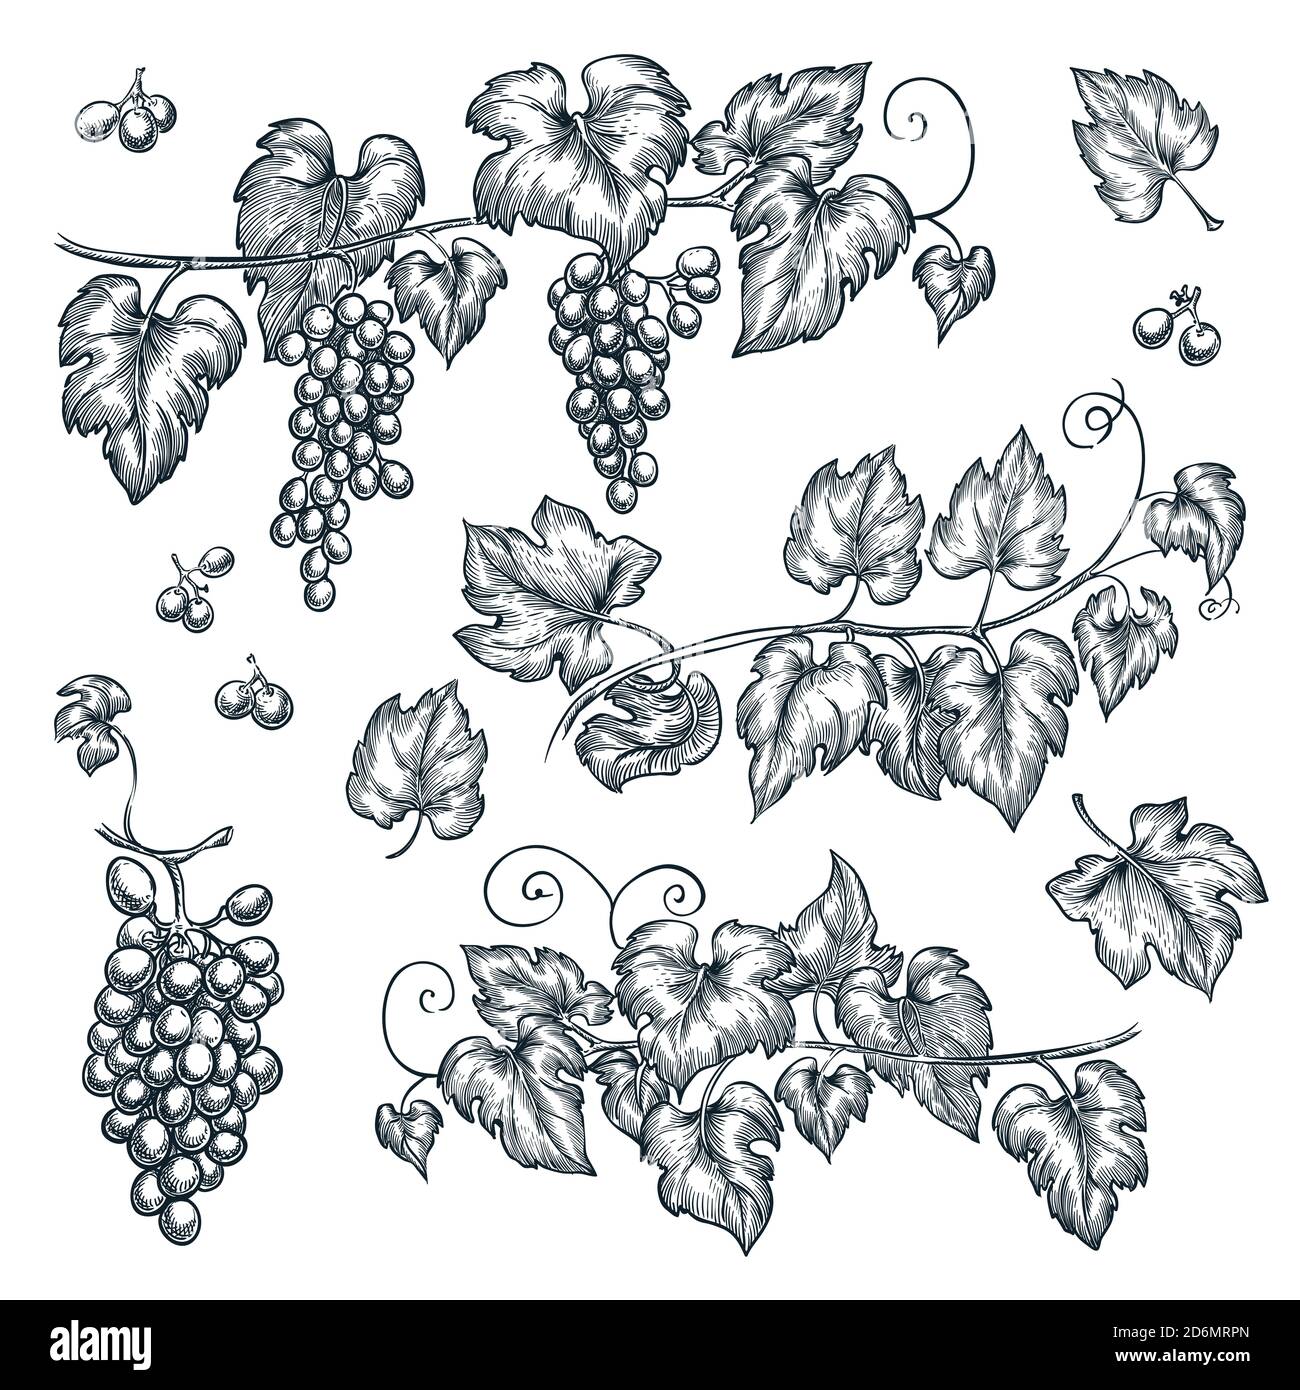 Steven Noble Illustrations Grapevine Stock  Vine drawing Vine tattoos Grape  vines